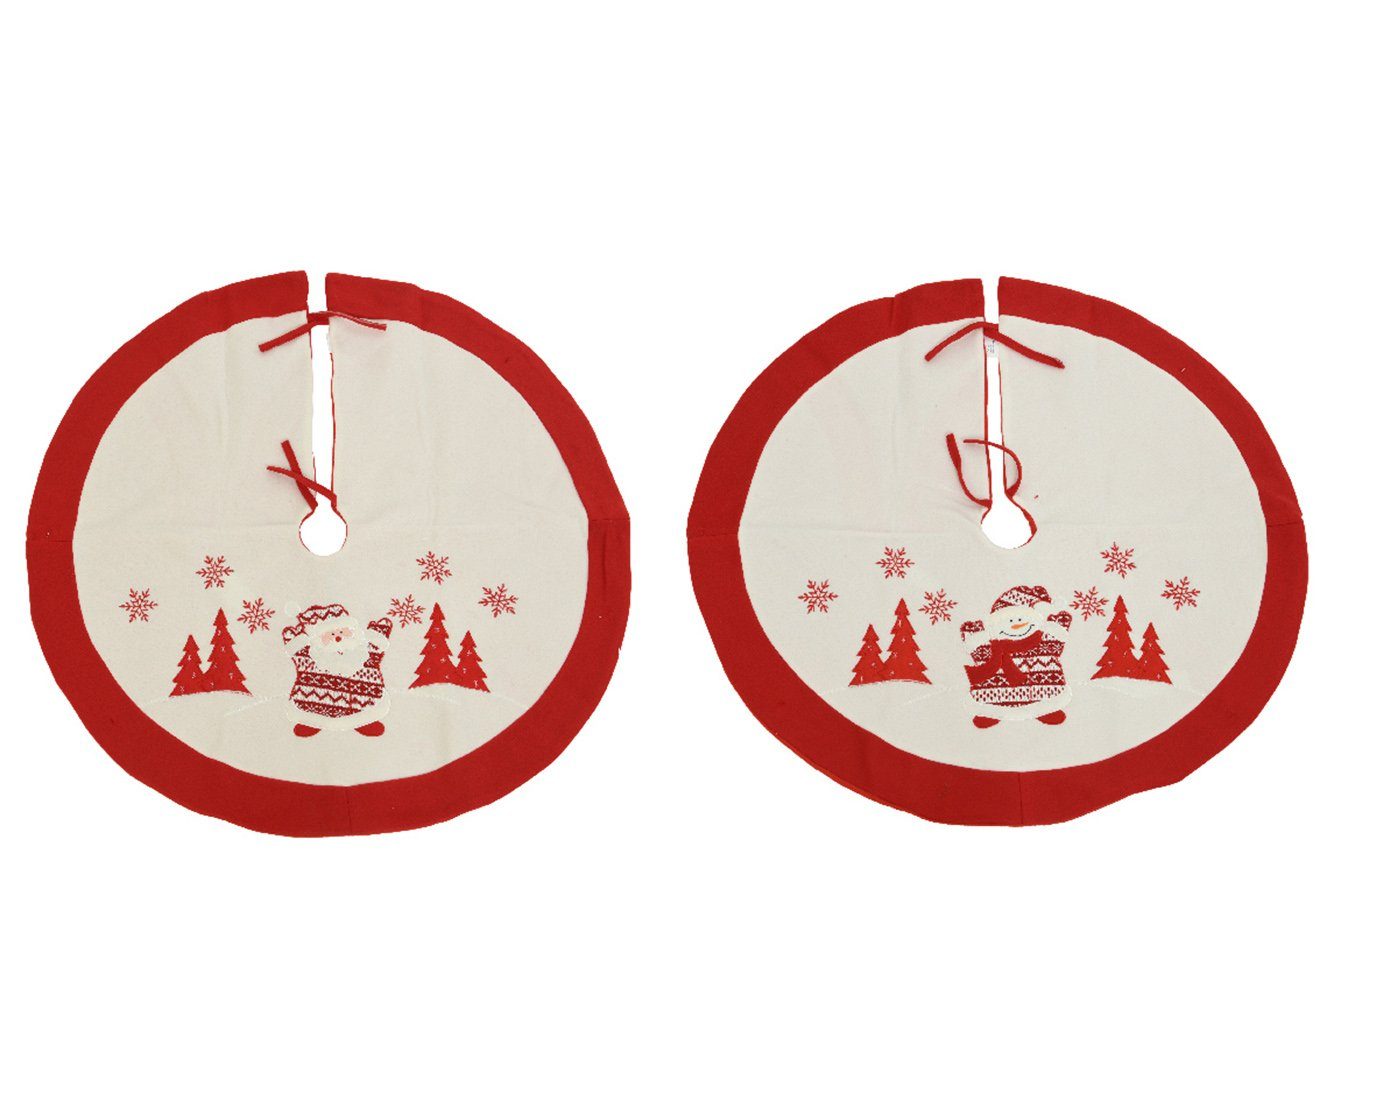 Decoris season decorations Weihnachtsbaumdecke, Weihnachtsbaumdecke Filz mit Schneemann / Santa 90cm rot 1 Stück sort. | Weihnachtsbaumdecken